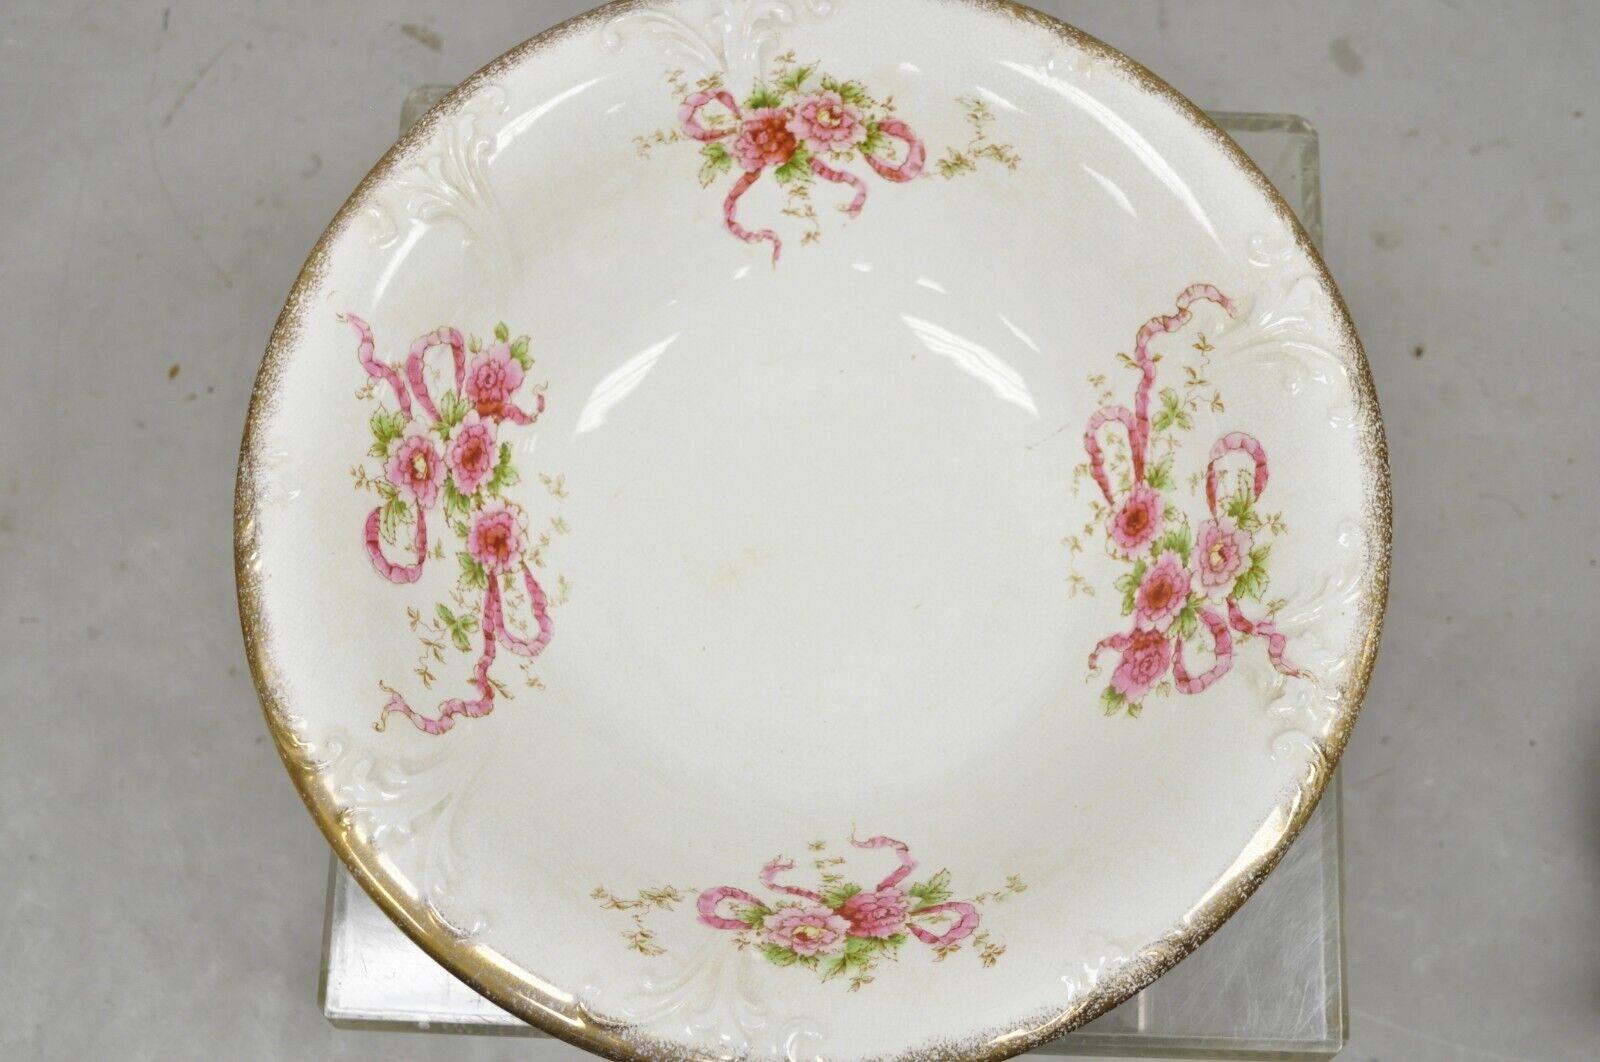 20th Century Antique W.H. Tatler Porcelain Pink Rose Flower Wash Basin - 4 Pc Set For Sale